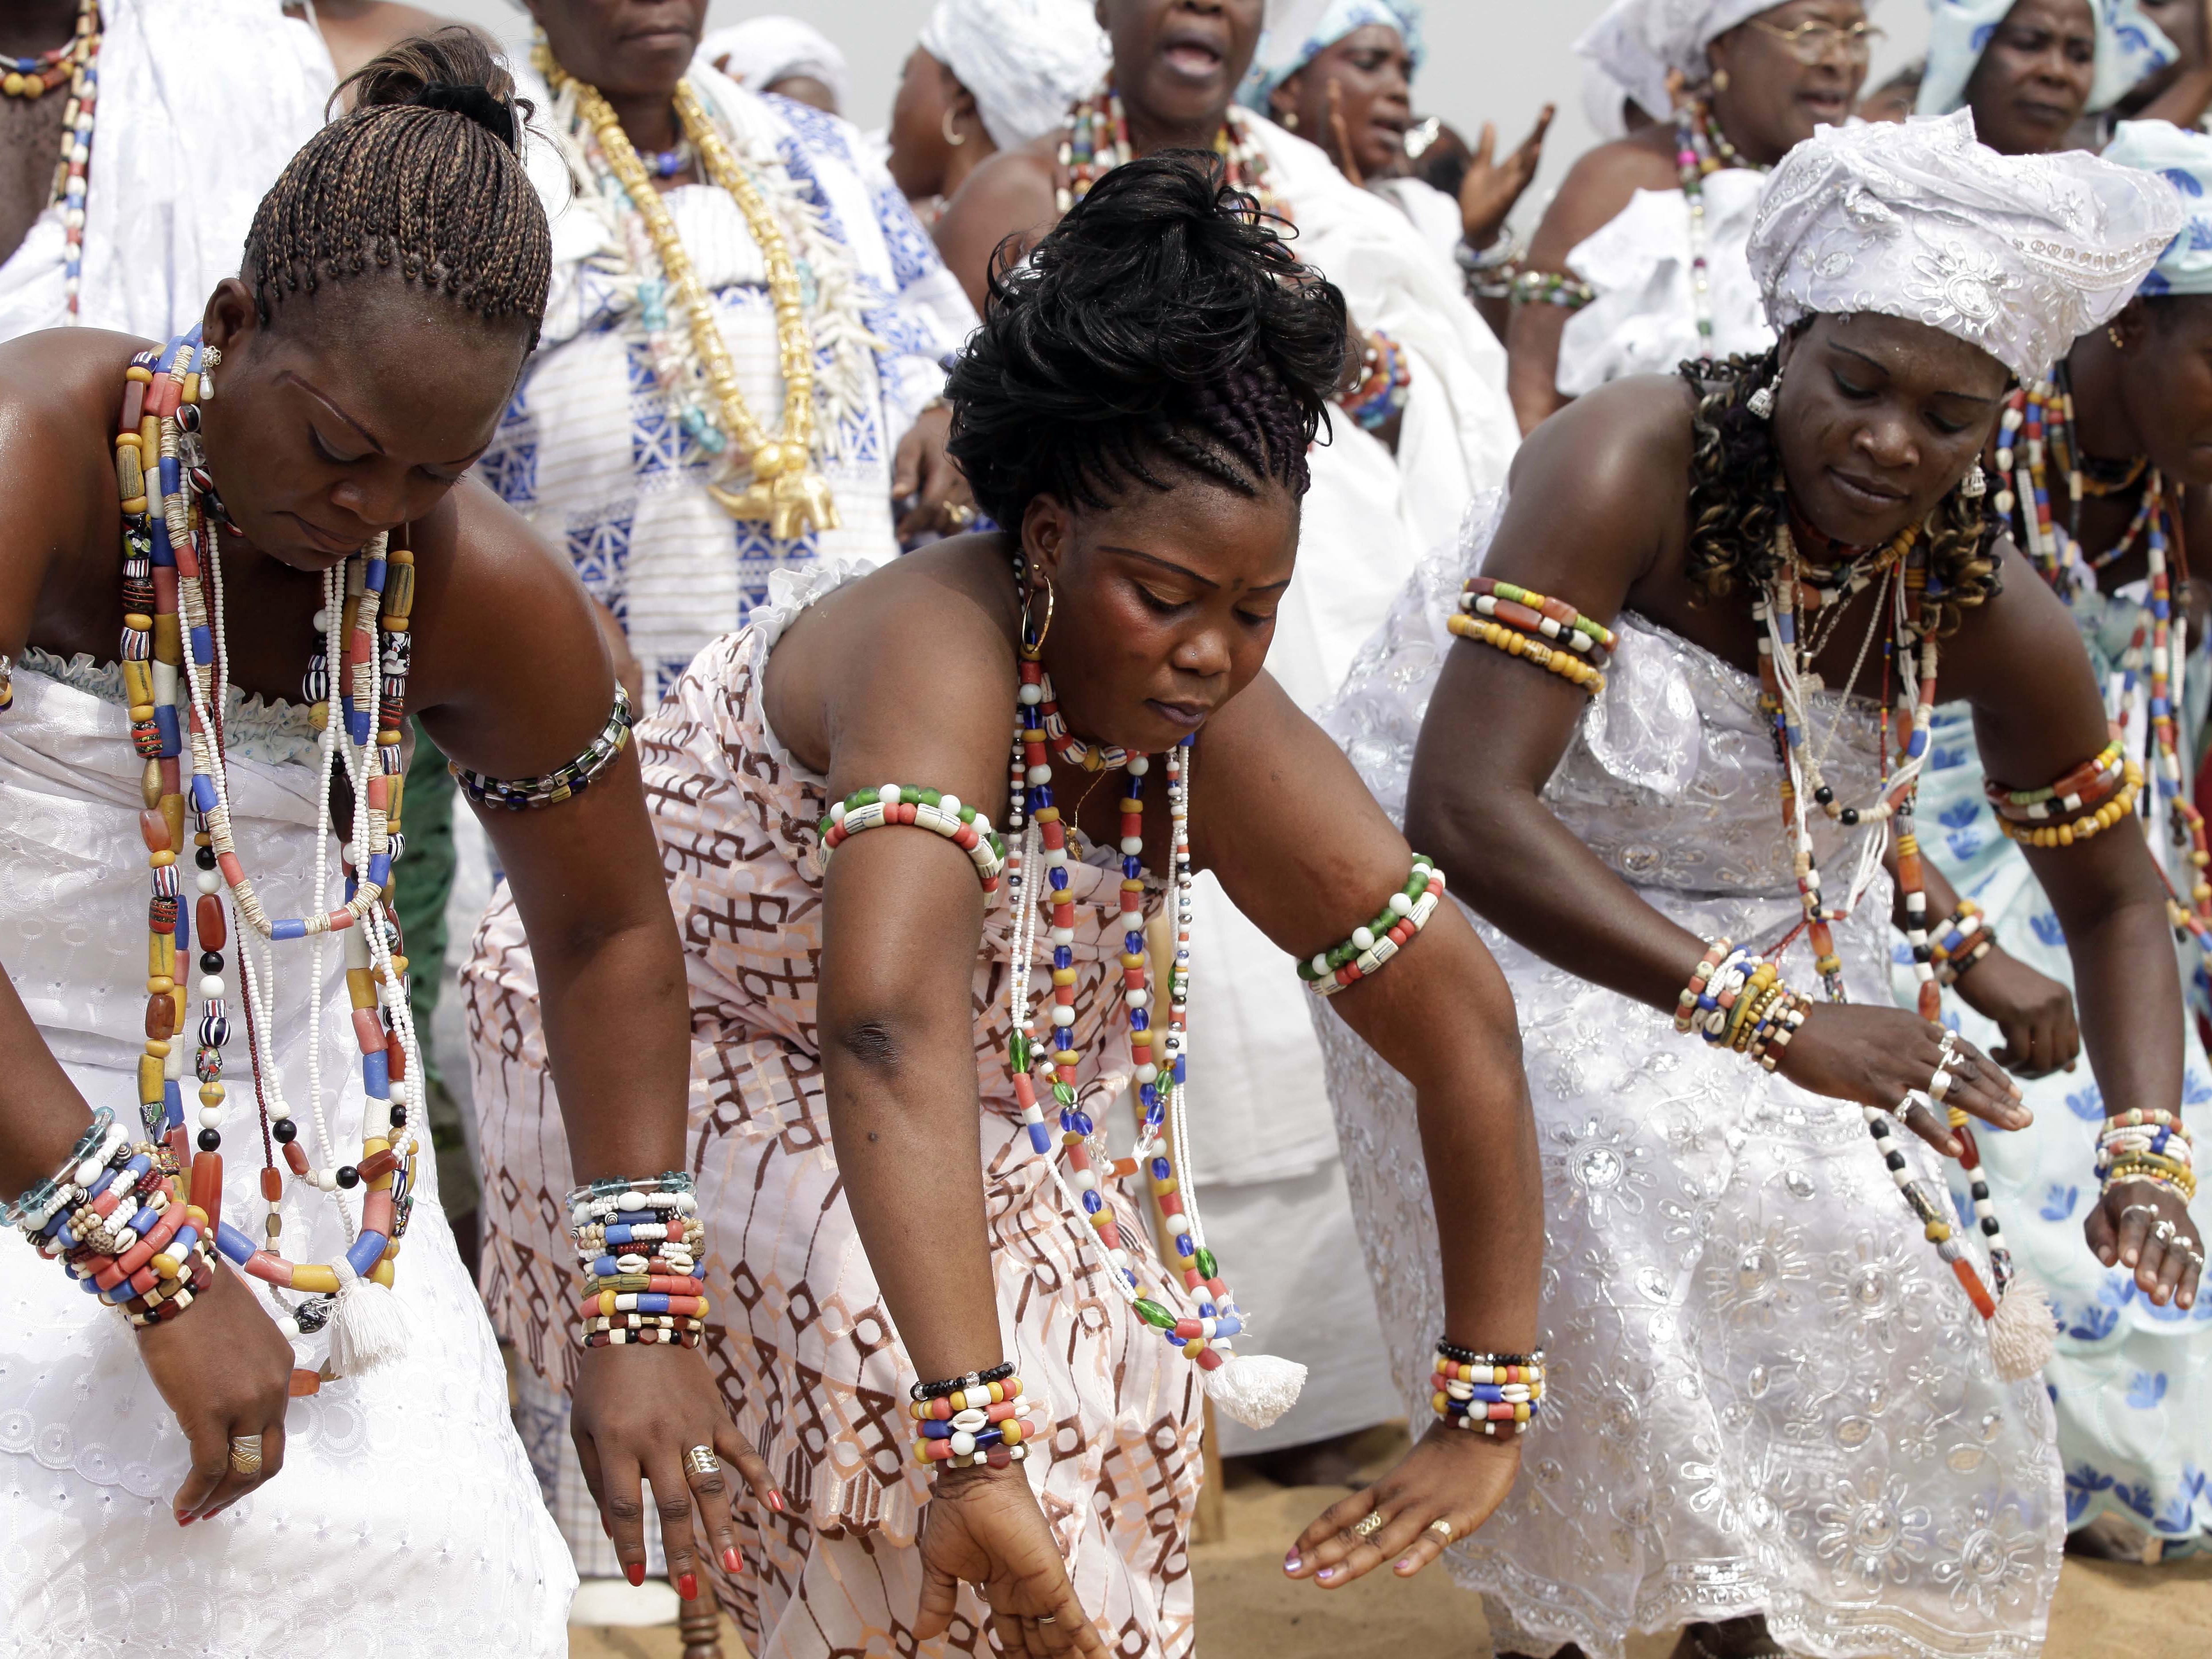 Mysticism, modernity abound in Benin Voodoo fest - CBS News